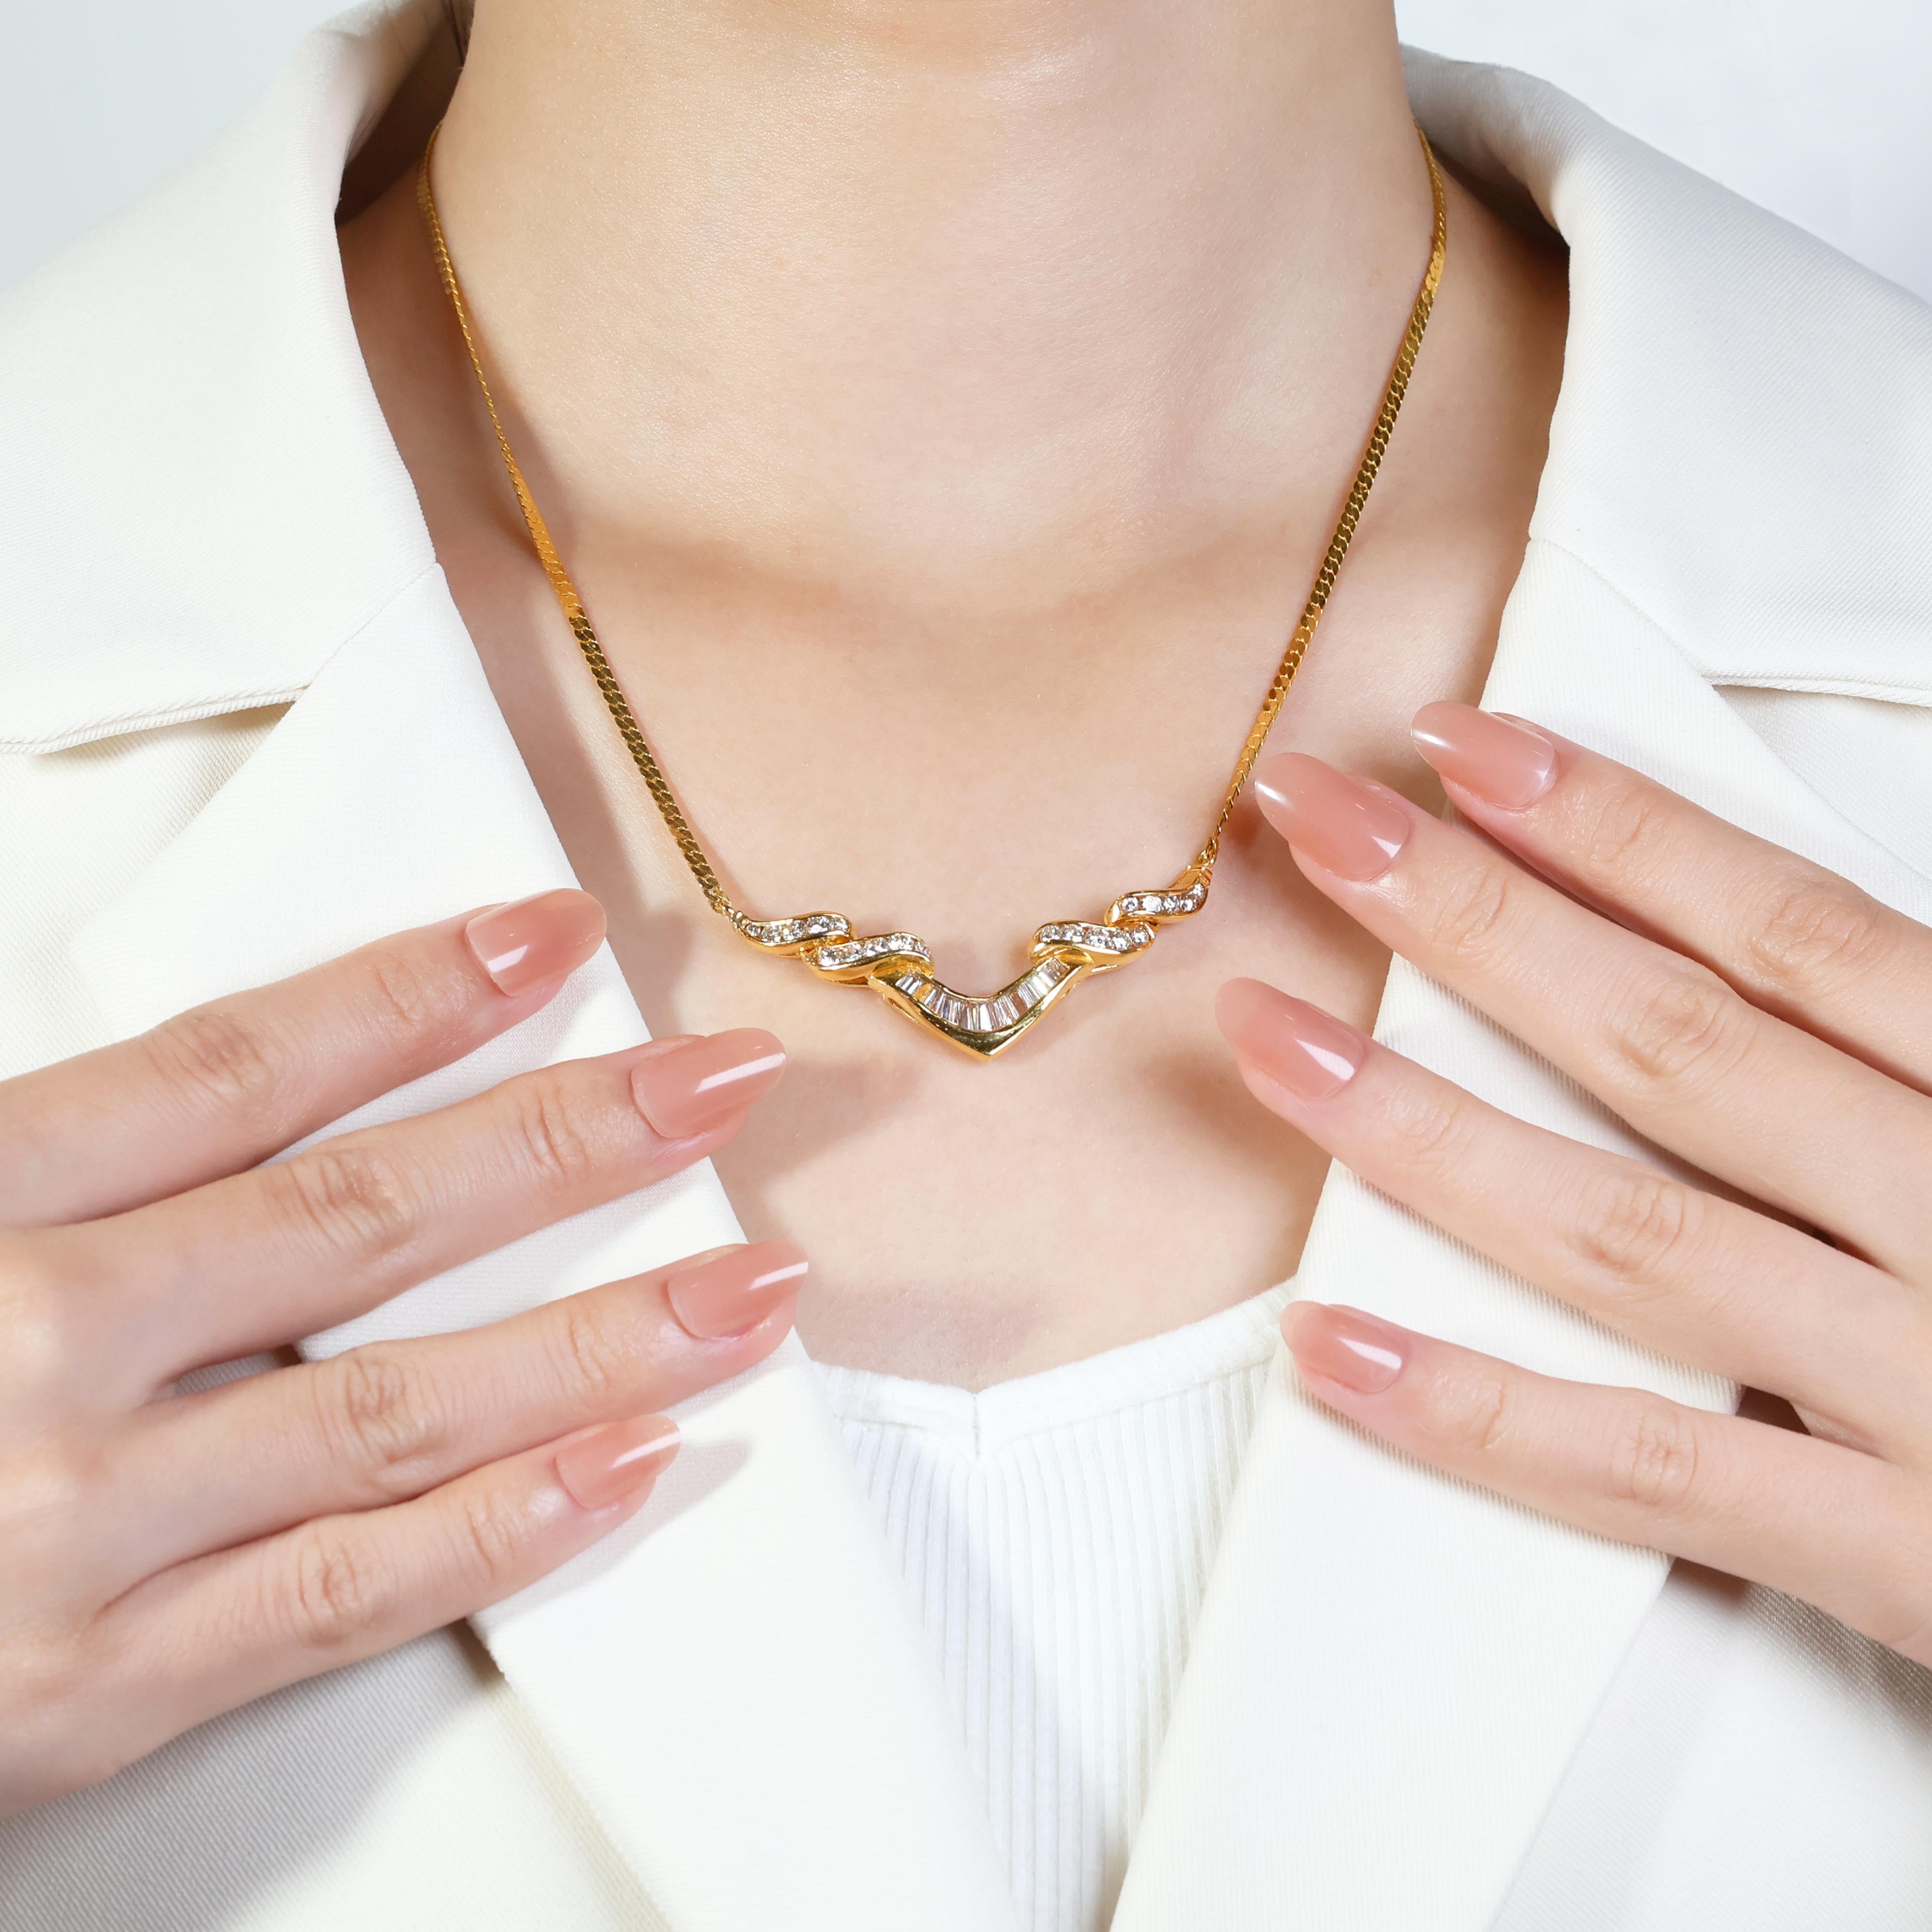 Diese exquisite Halskette präsentiert eine atemberaubende Reihe von Diamanten, die in luxuriösem 20-karätigem Gelbgold gefertigt sind. Der Mittelteil besticht durch ein faszinierendes Design mit 12 Diamanten im Kegelschliff mit einem Gesamtgewicht